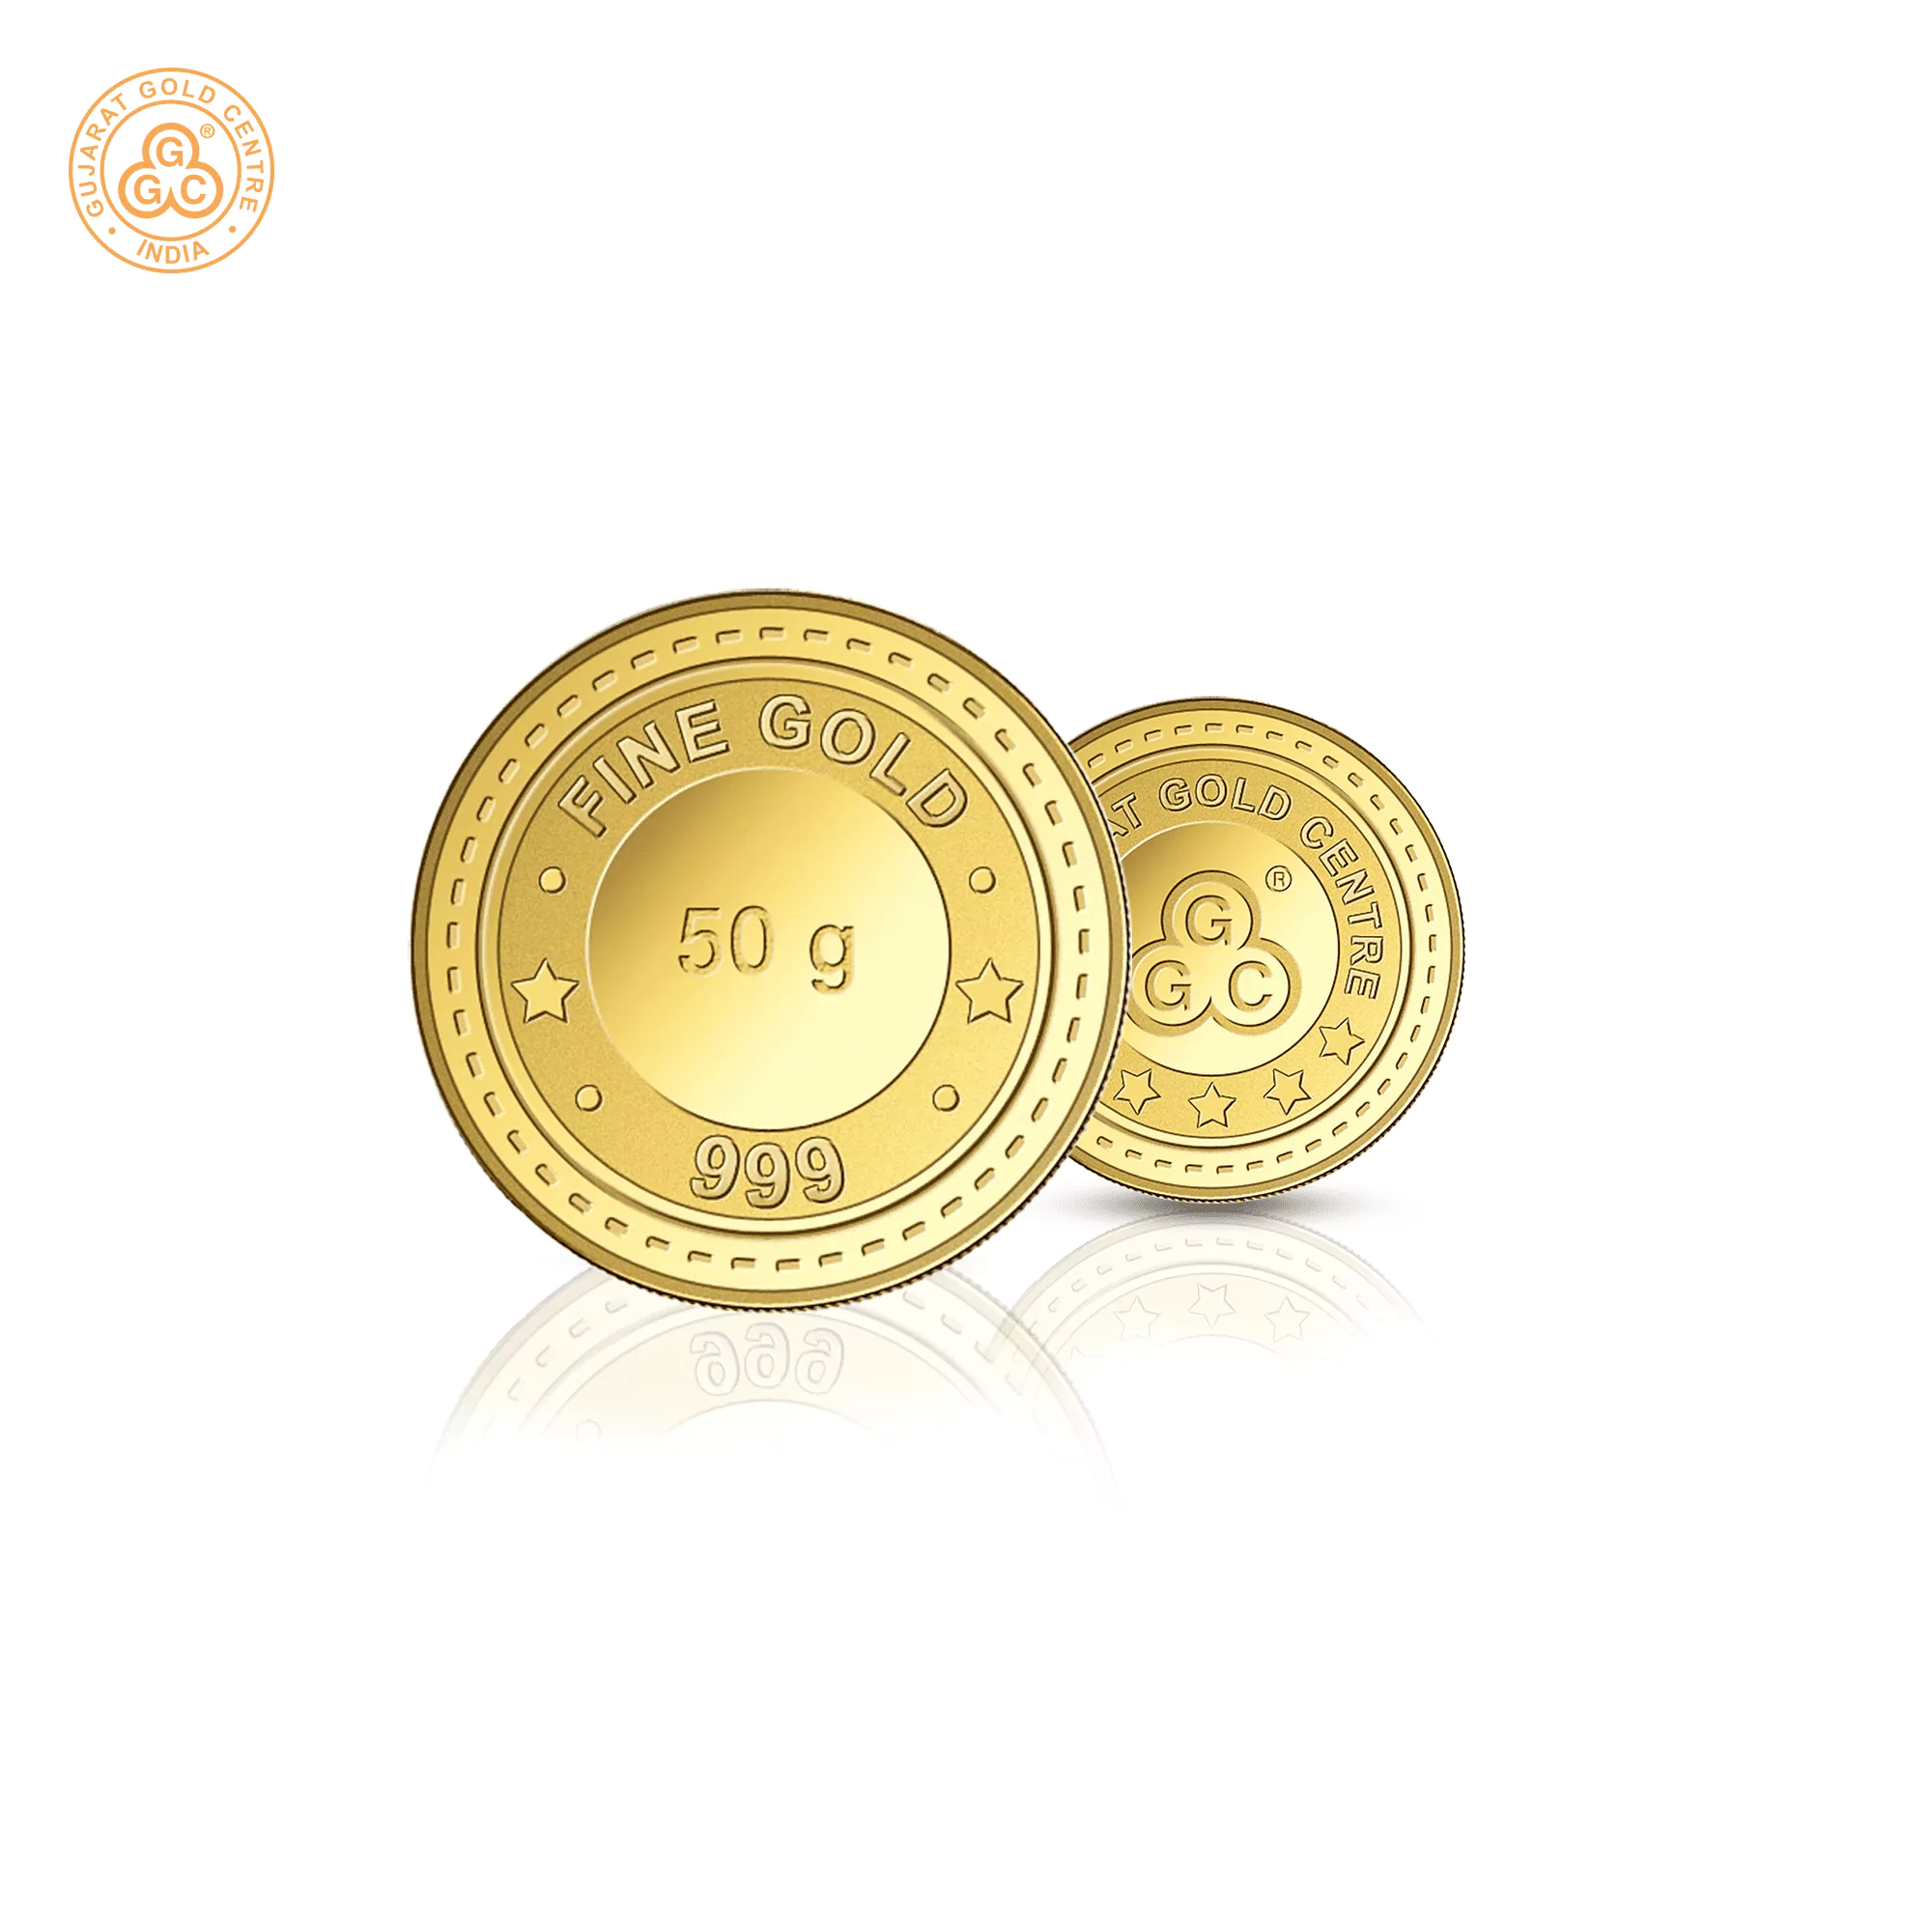 50gm GGC 24K Gold Coin